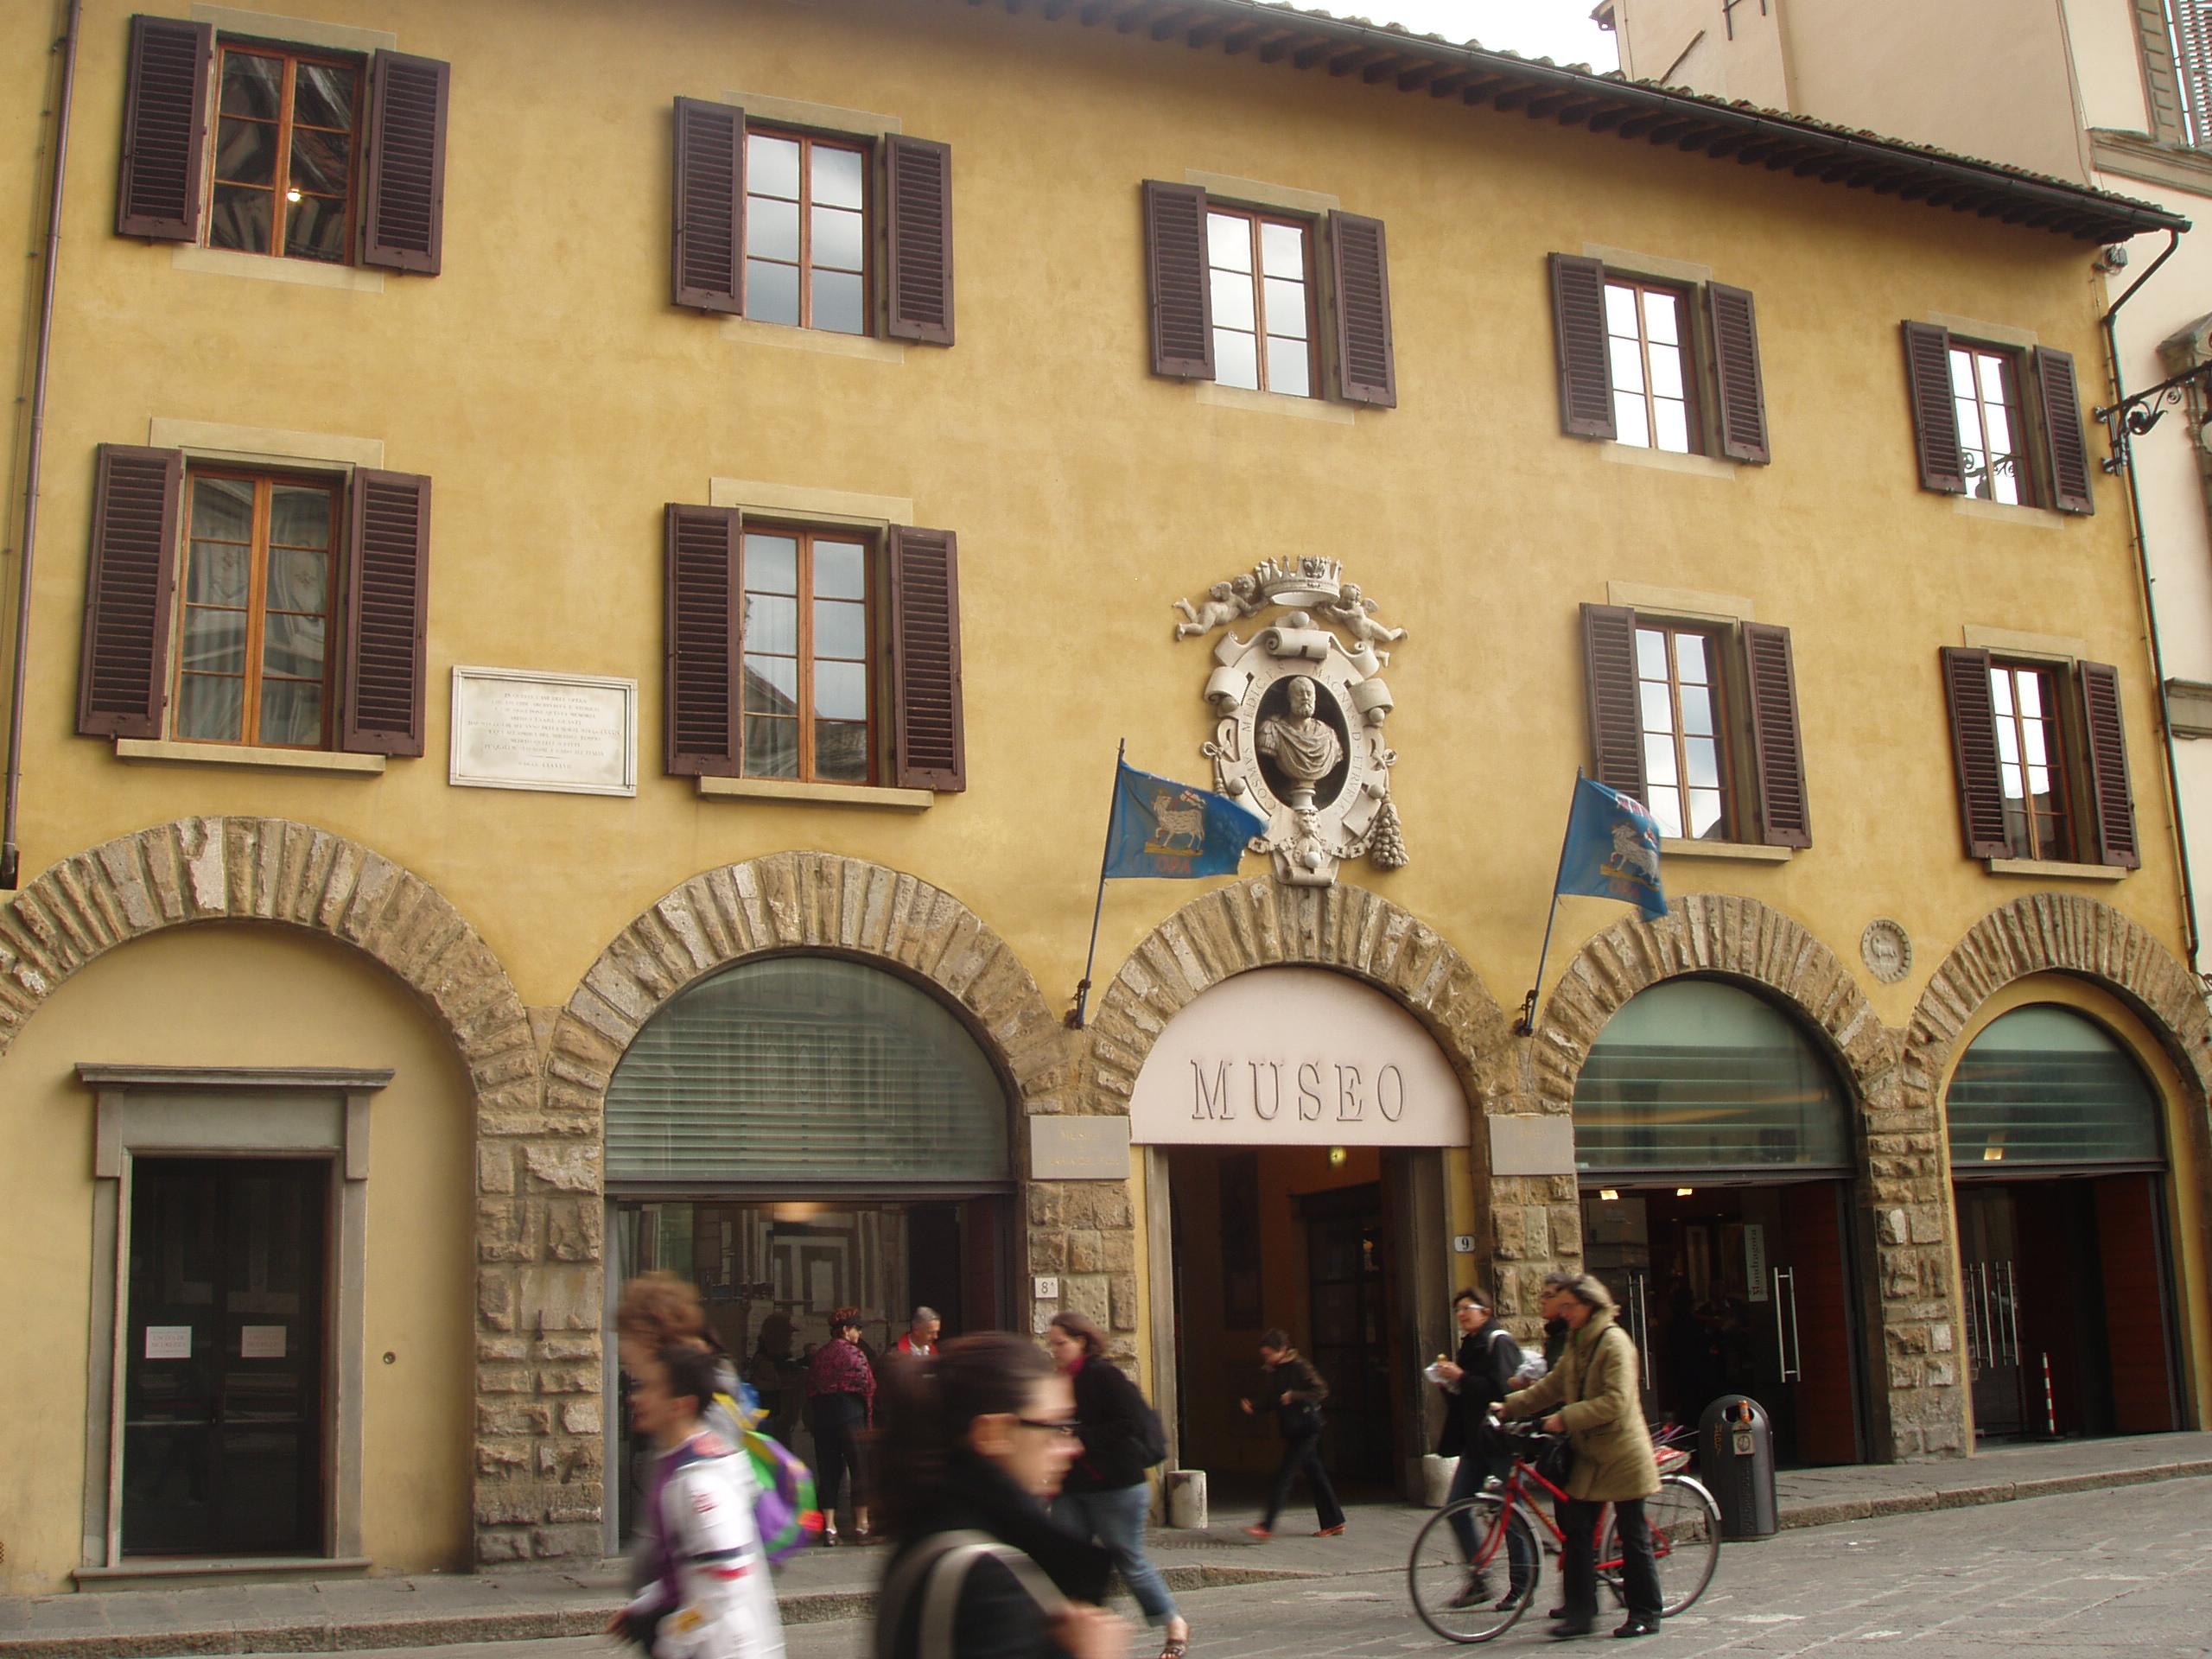 Музей Опера ди Санта-Мария-дель-Фьоре